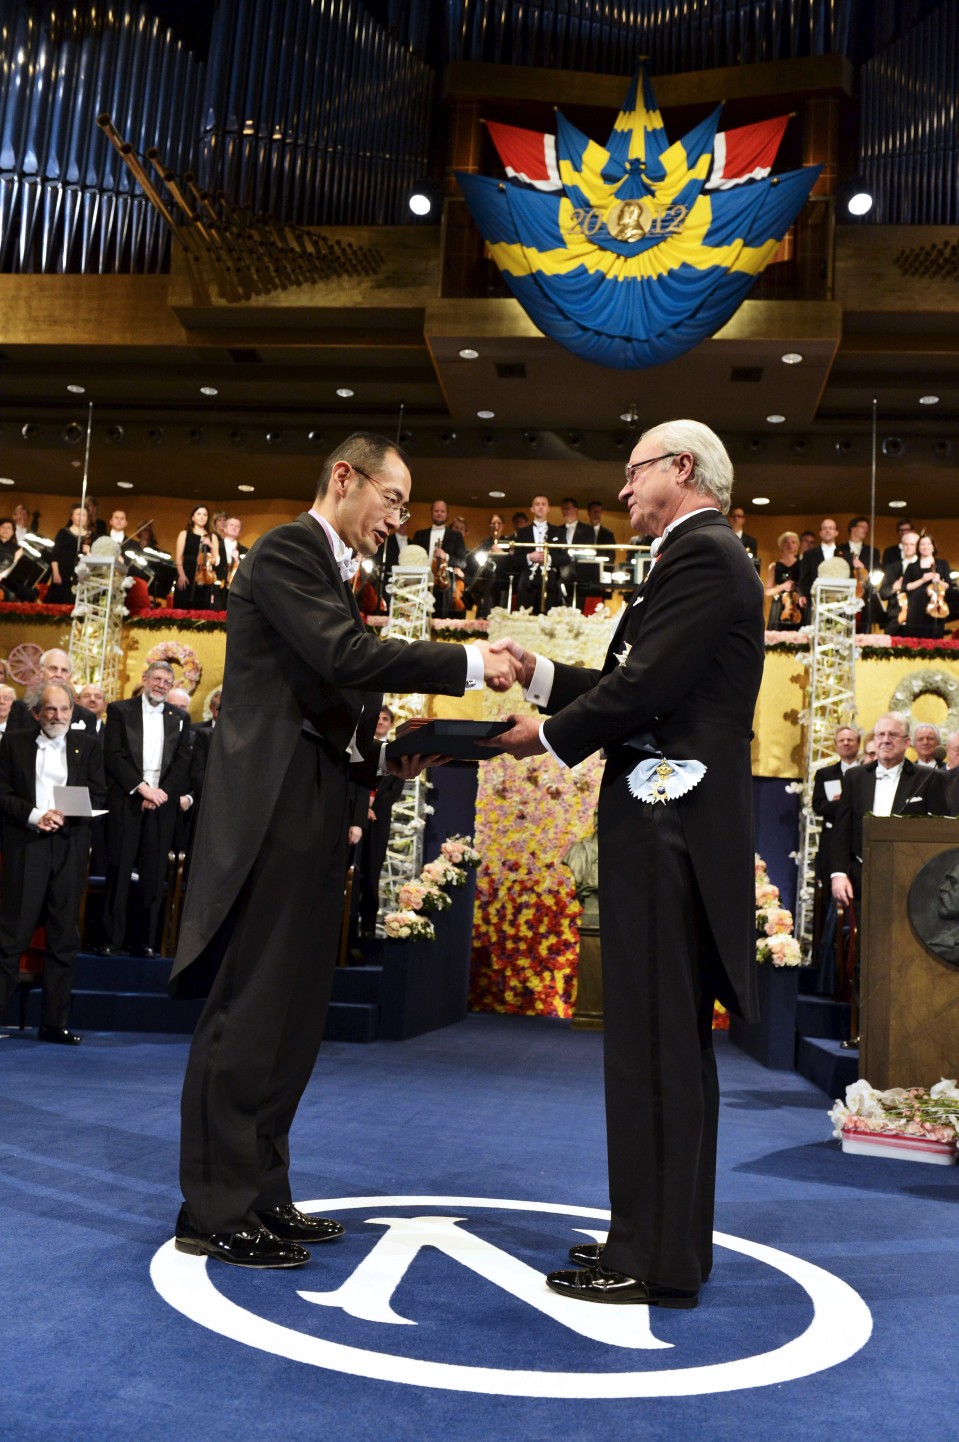 Ruotsin kuningas Kaarle XVI Kustaa ojentaa Shinya Yamanakalle Nobelin palkinnon vasemmalla kädellä. Miehet kättelevät samaan aikaan oikeilla käsillään. Taustalla näkyy juhlapukuihin pukeutuneita ihmisiä.